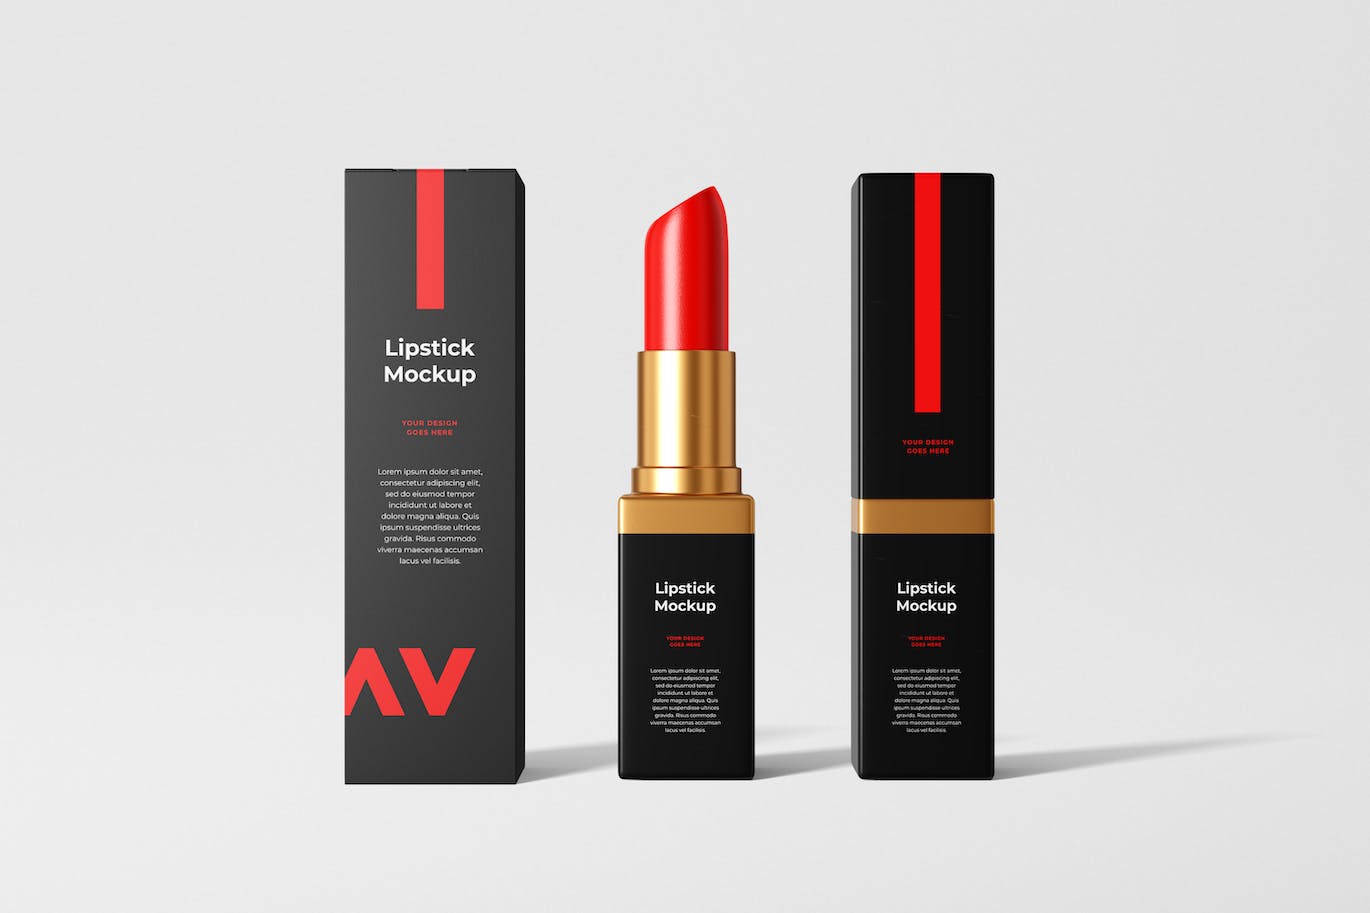 化妆品口红品牌包装设计样机 Lipstick Mockup 样机素材 第1张